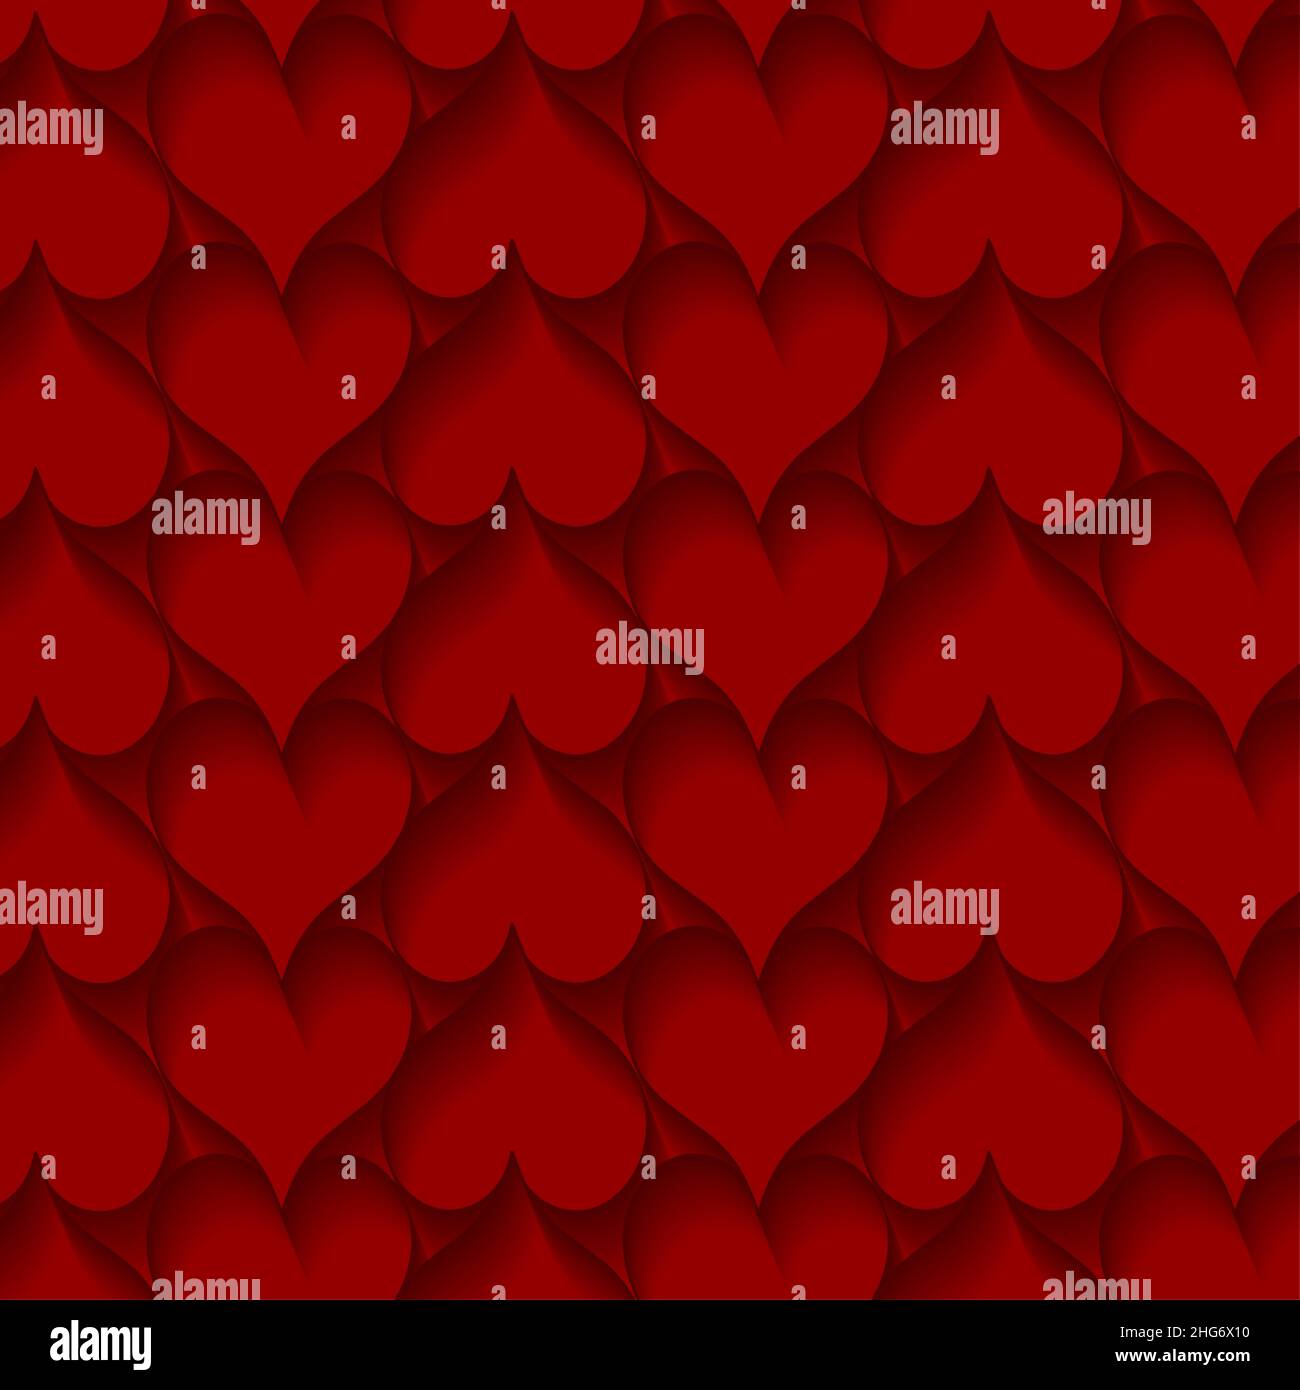 Día de San Valentín, corazones en fondo rojo. Textura de corazones. Plantilla cuadrada de corazones, tarjetas de celebración Ilustración del Vector